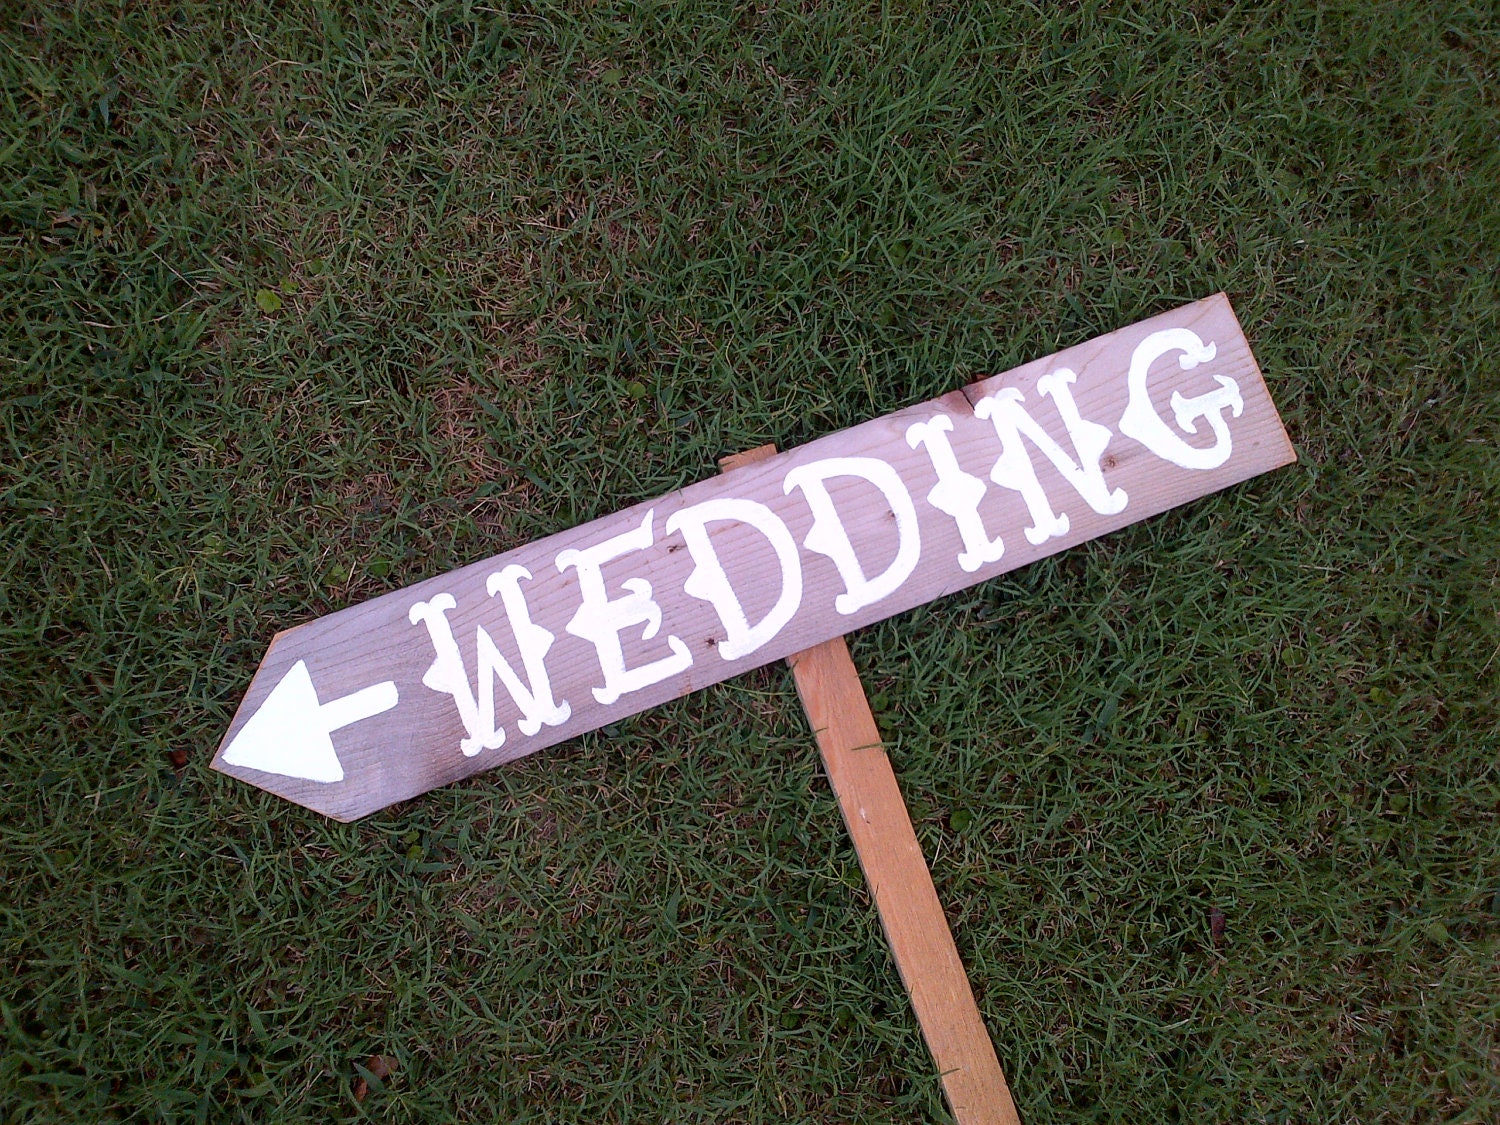 western wedding decorations on Wedding Sign  Western Wedding Decorations Large Font Recycled Wood